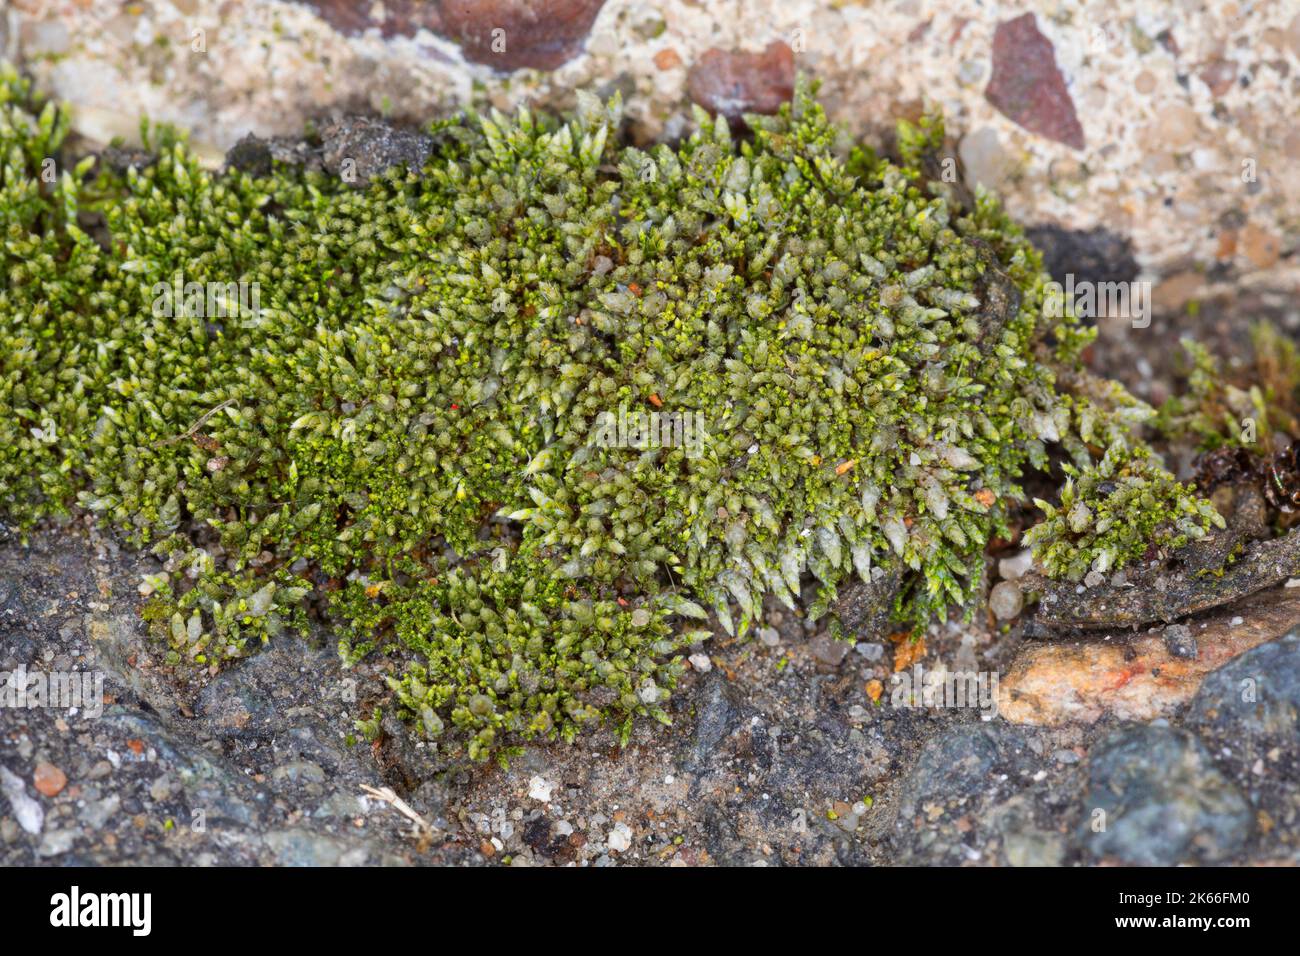 Silbergrünes Bryummoos, silbrig-fädiger Moos (Bryum argenteum), in den Lücken wachsend Betonplatten, Deutschland Stockfoto